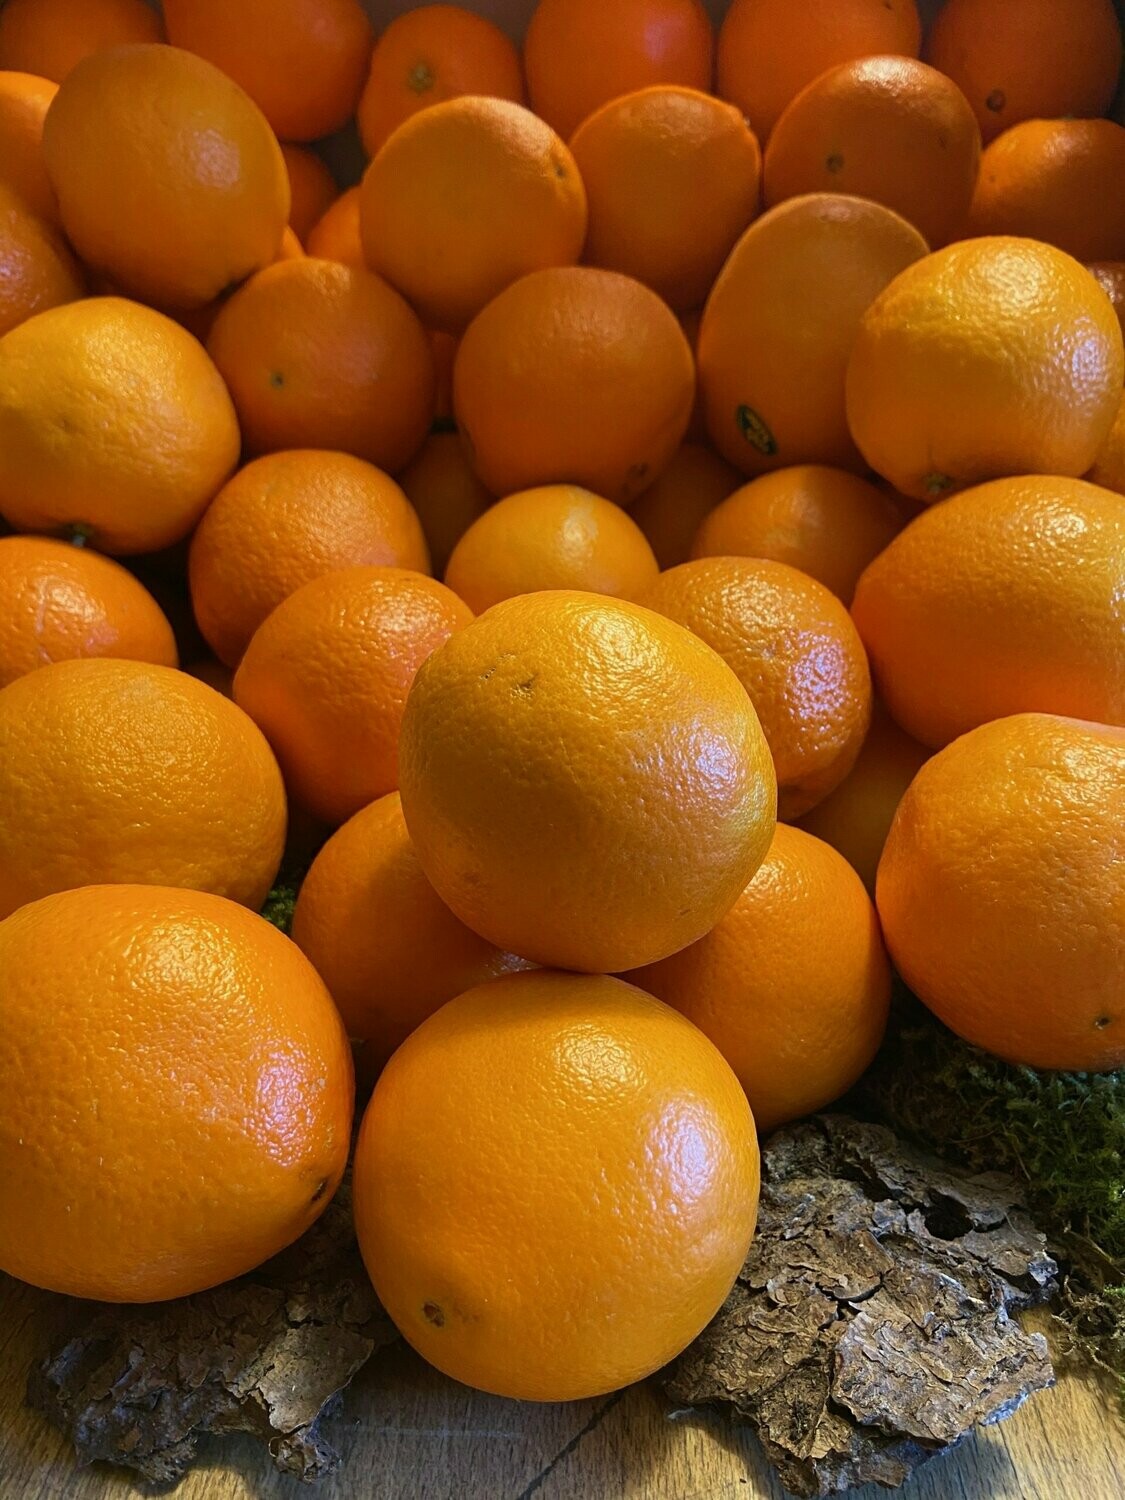 - Postversand zum kleine prima Auspressen - kein Früchte Orangen - - derzeit